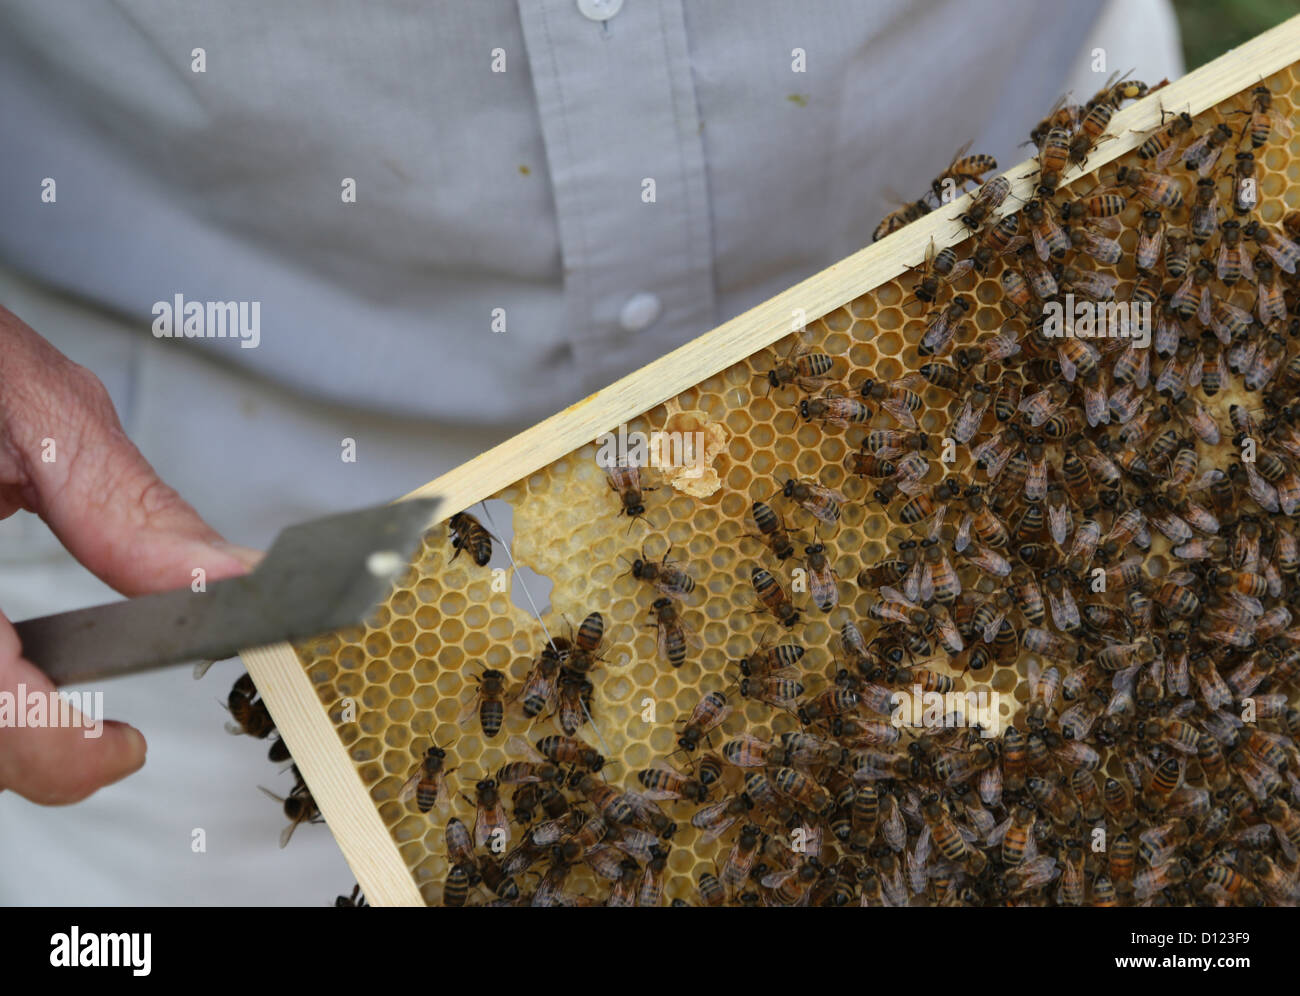 Cellule royale ouverte montrant les bee sur le bâti à partir de la ruche Surrey England Banque D'Images